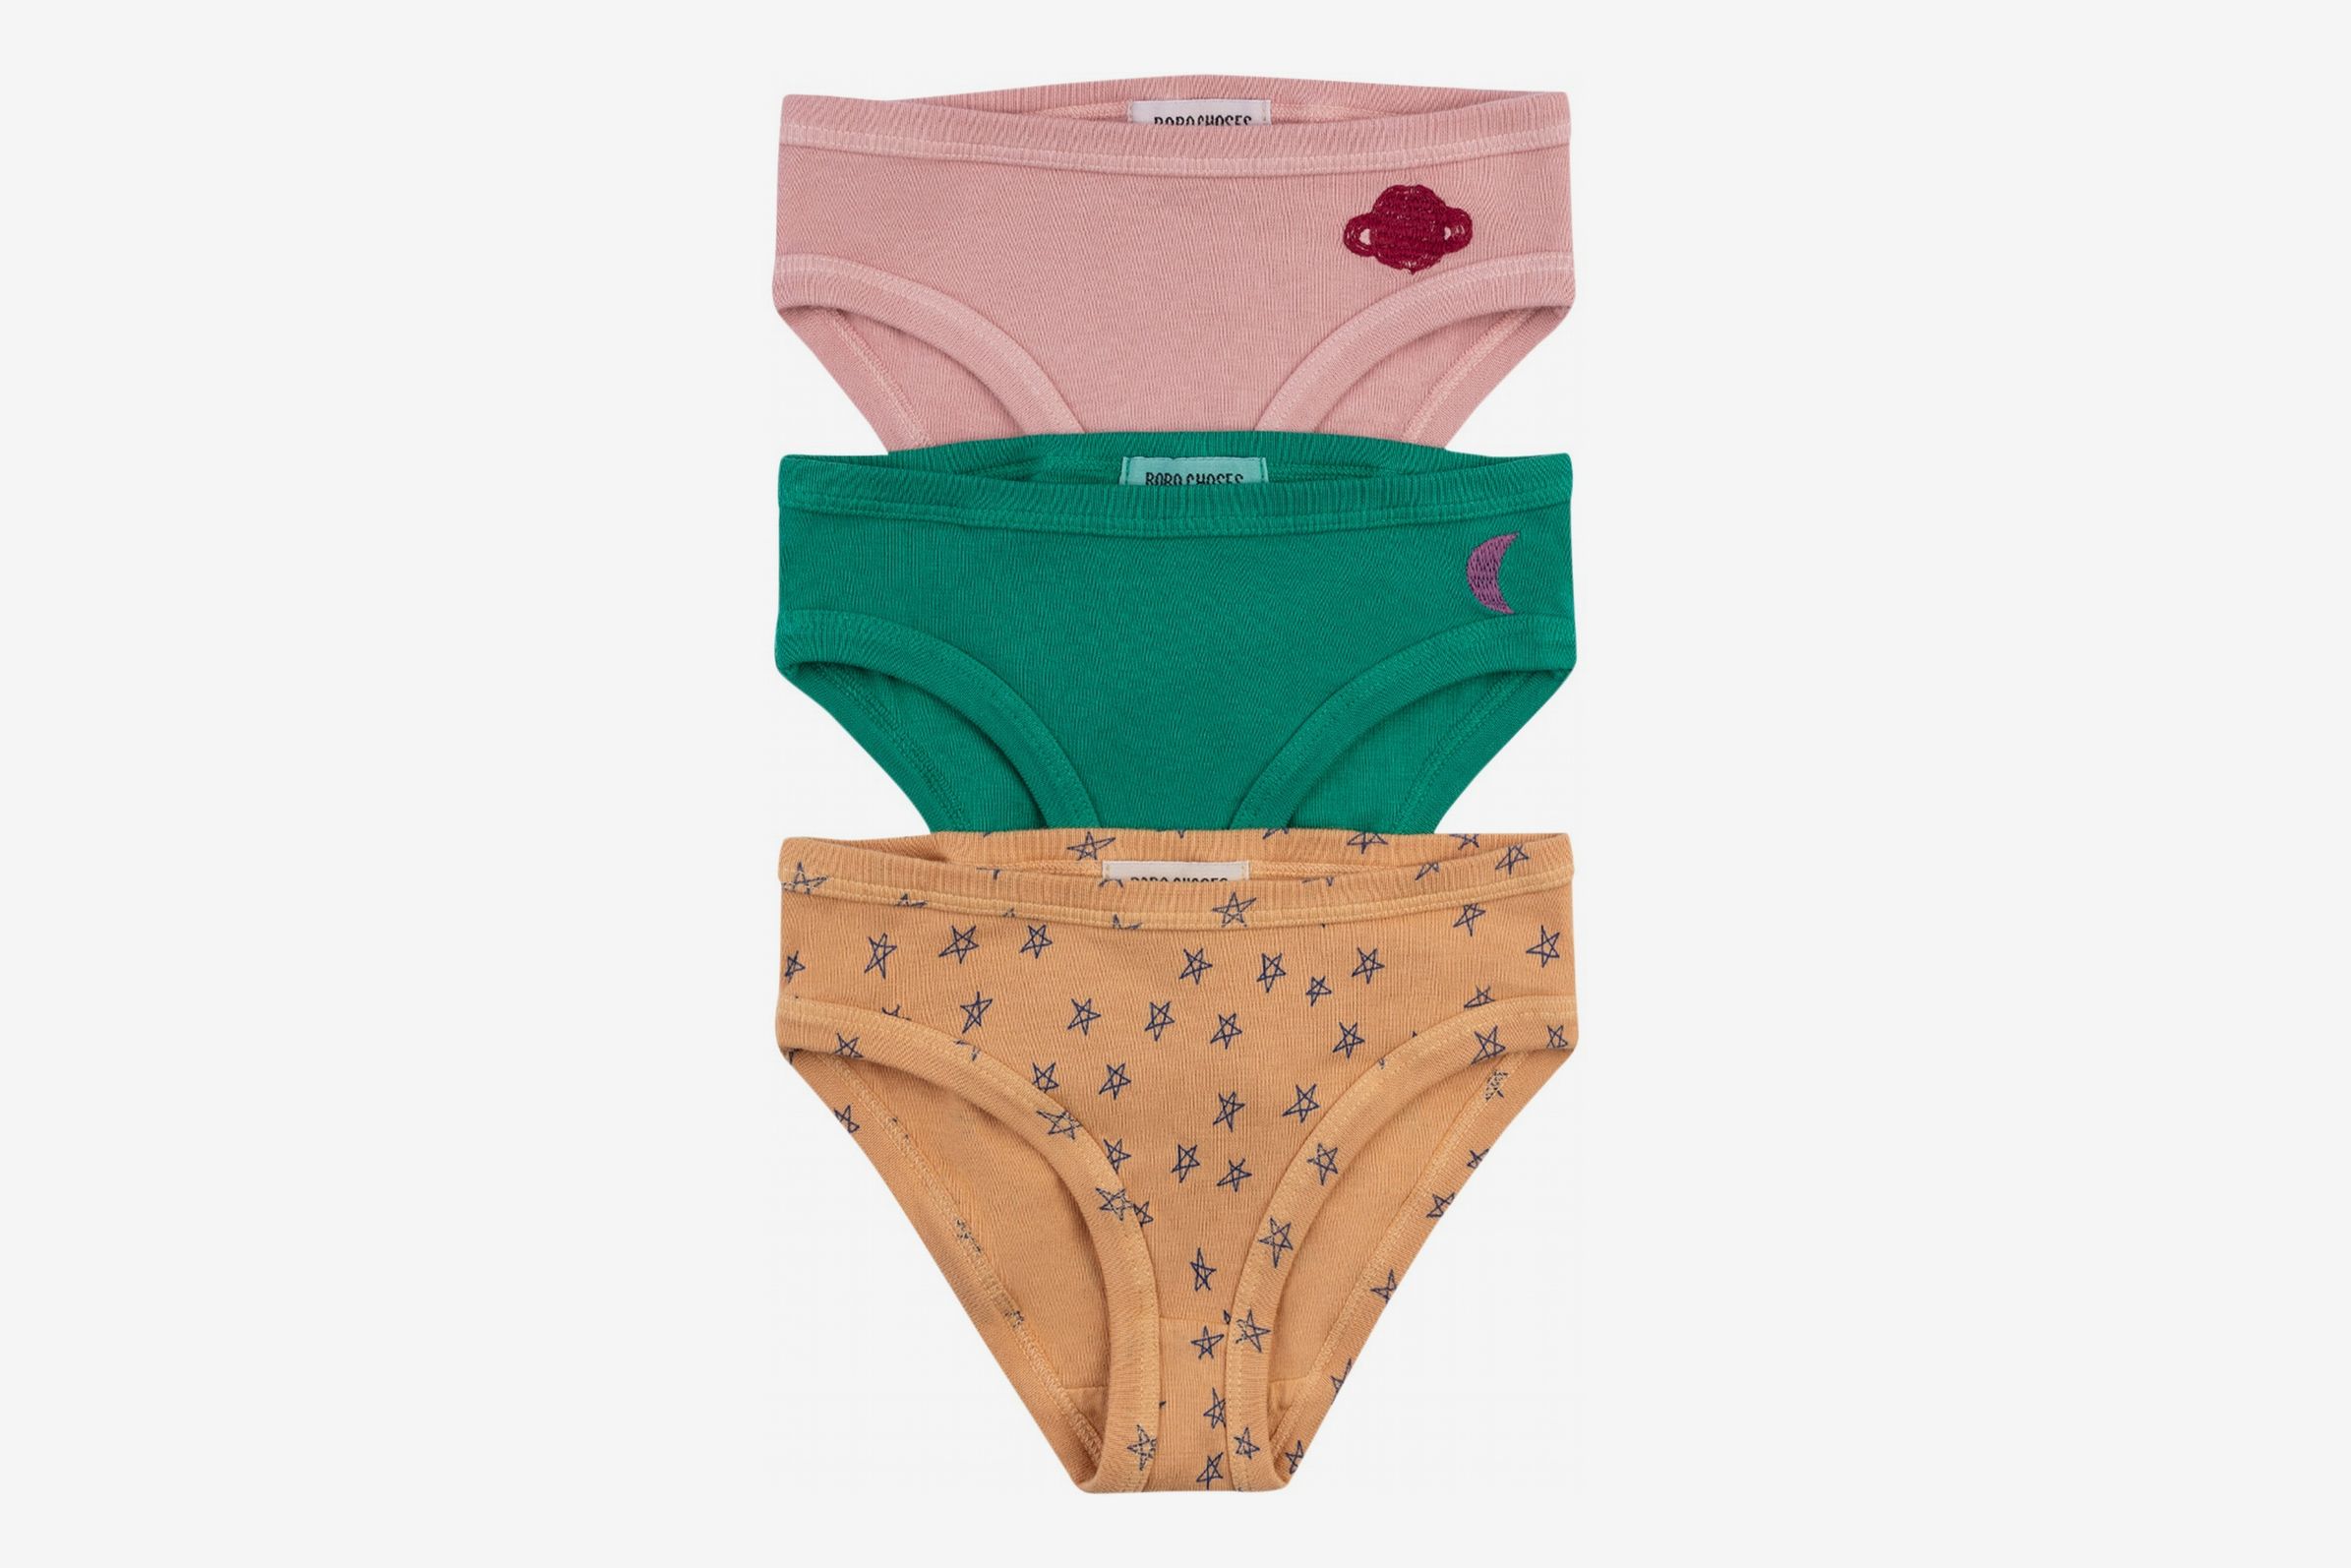 Evercute Boys Cotton Briefs Underwear Cool & Dry Multipack Toddlers Kids Undies Panties 